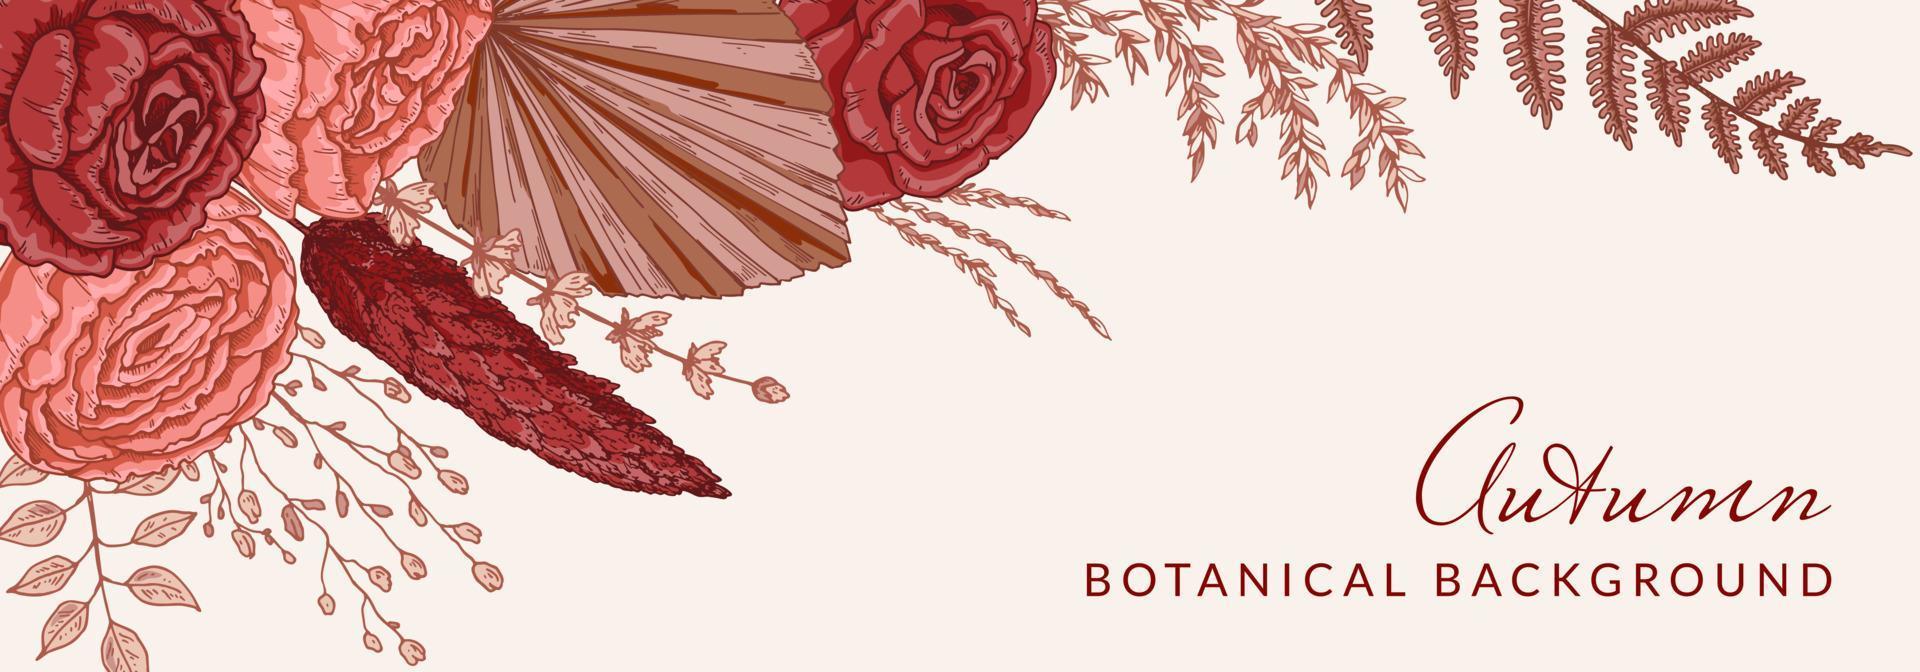 Herbst horizontales Banner mit modernen floralen Elementen. hand gezeichnete botanische vektorillustration. Platz für Text vektor